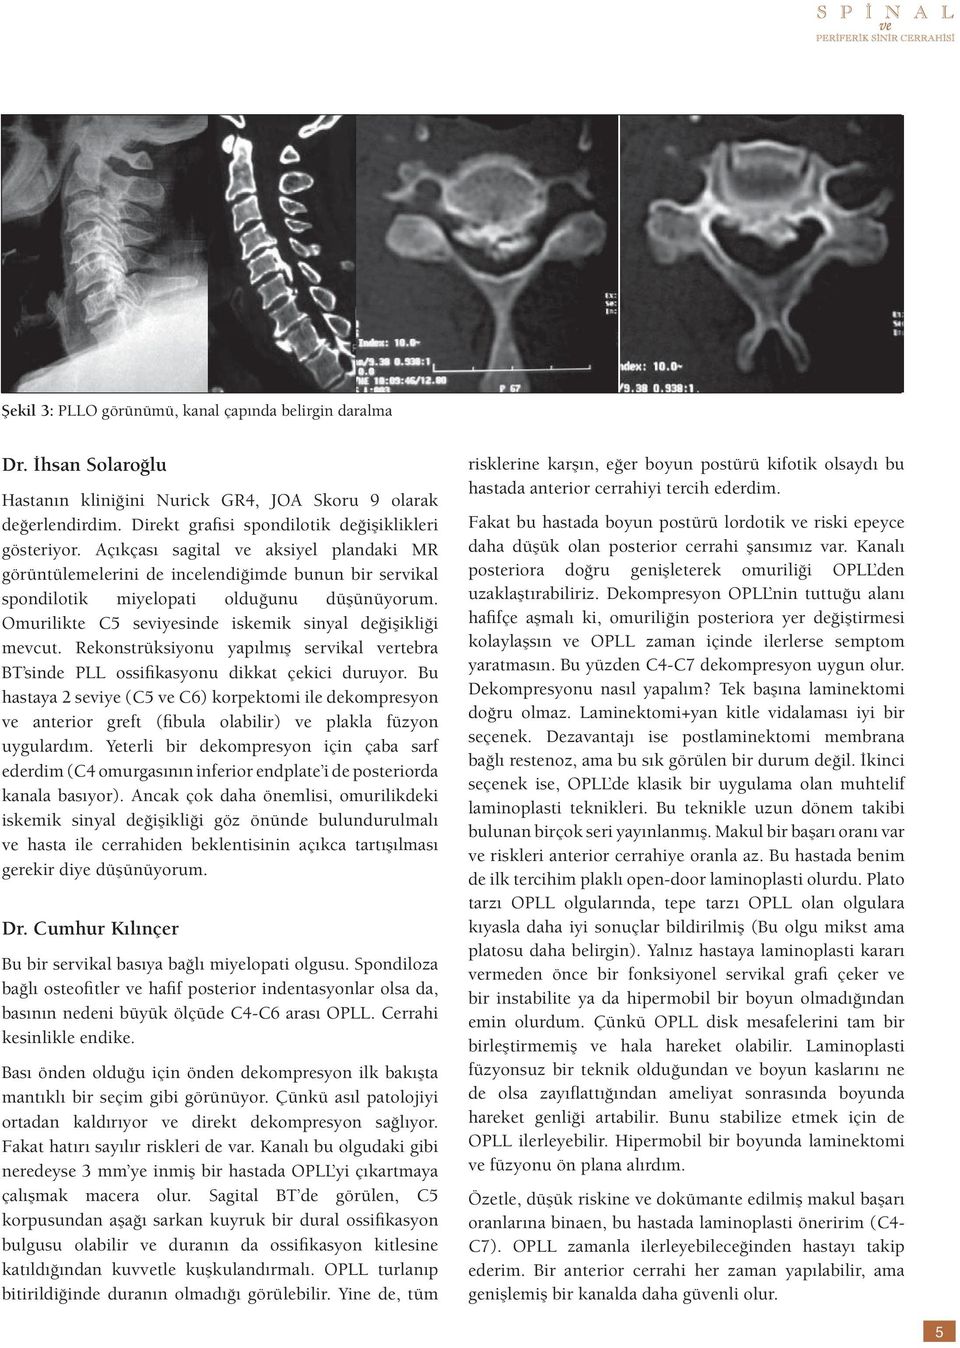 Rekonstrüksiyonu yapılmış servikal vertebra BT sinde PLL ossifikasyonu dikkat çekici duruyor.